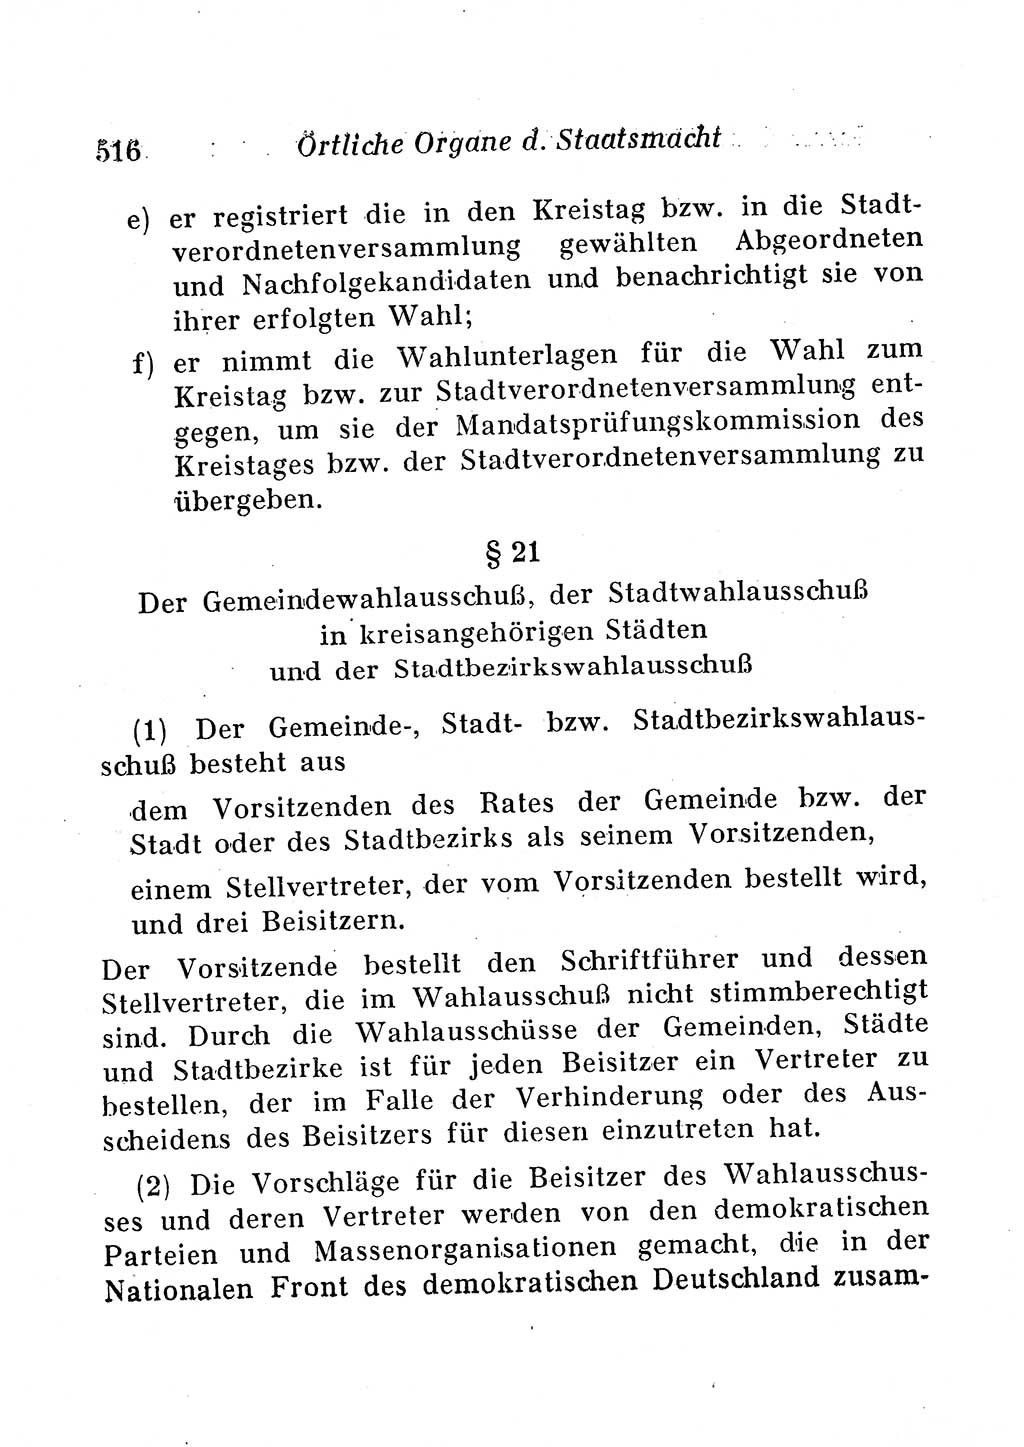 Staats- und verwaltungsrechtliche Gesetze der Deutschen Demokratischen Republik (DDR) 1958, Seite 516 (StVerwR Ges. DDR 1958, S. 516)